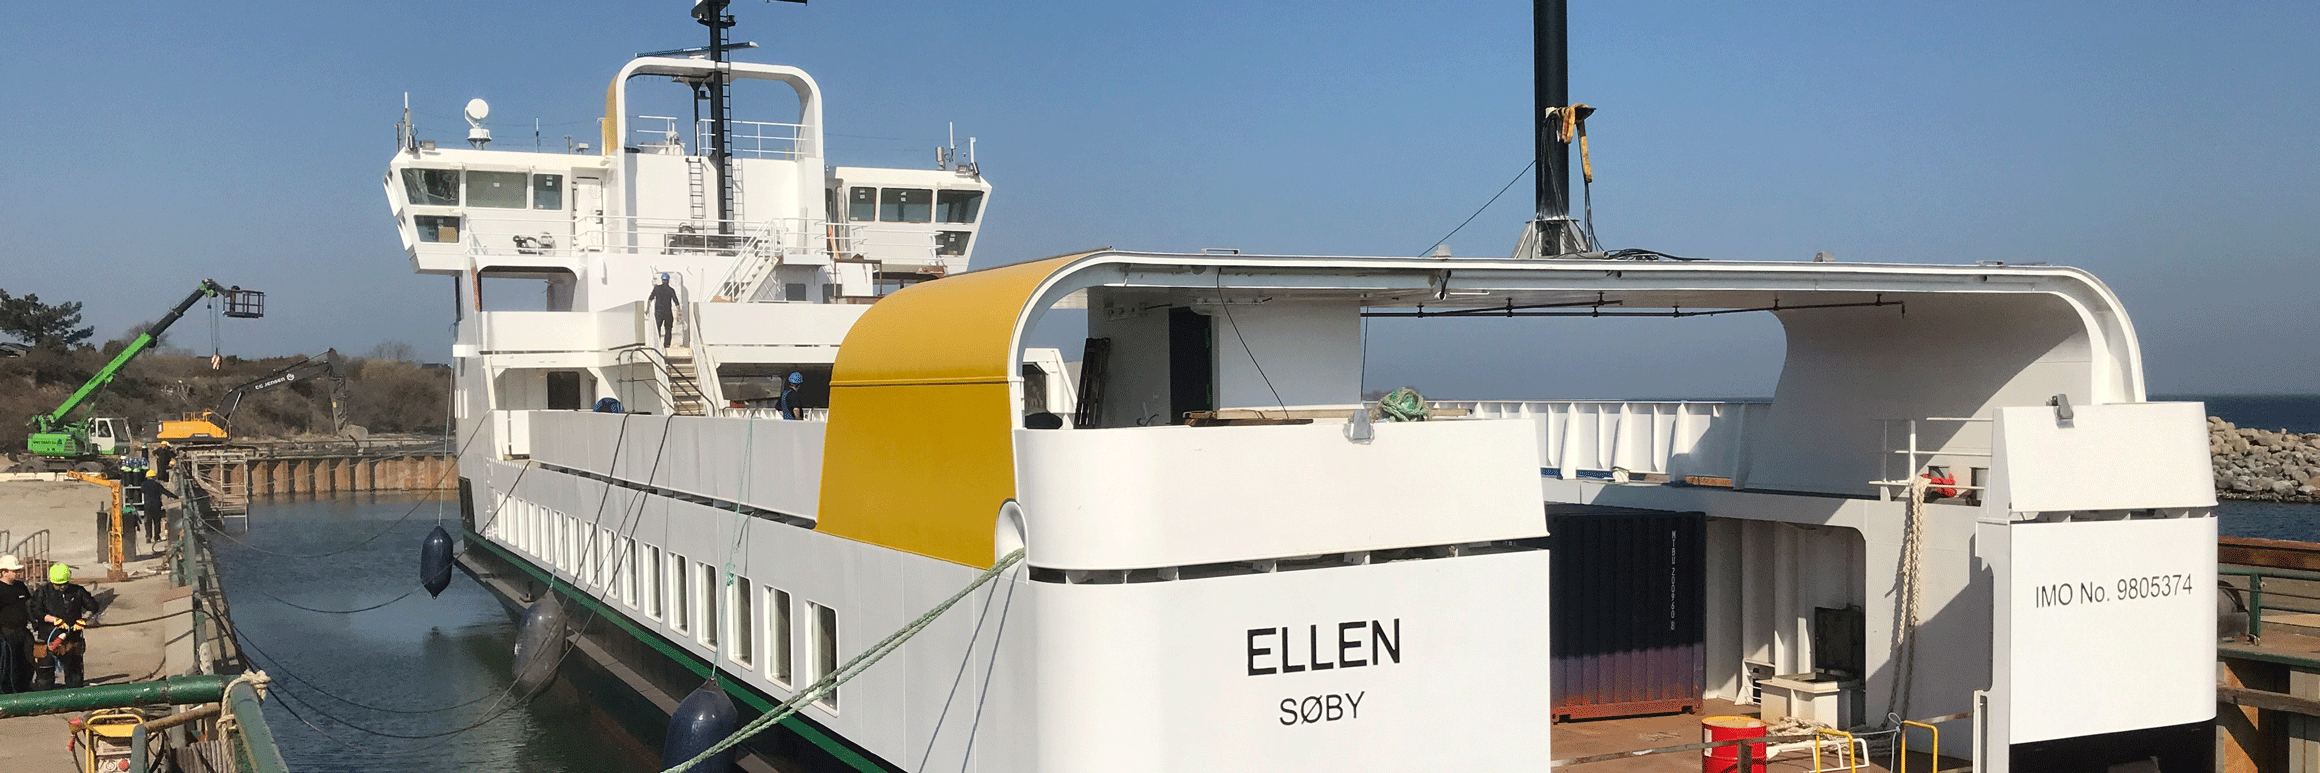 Ansicht von hinten: Die Elektrofähre Ellen im Hafen.